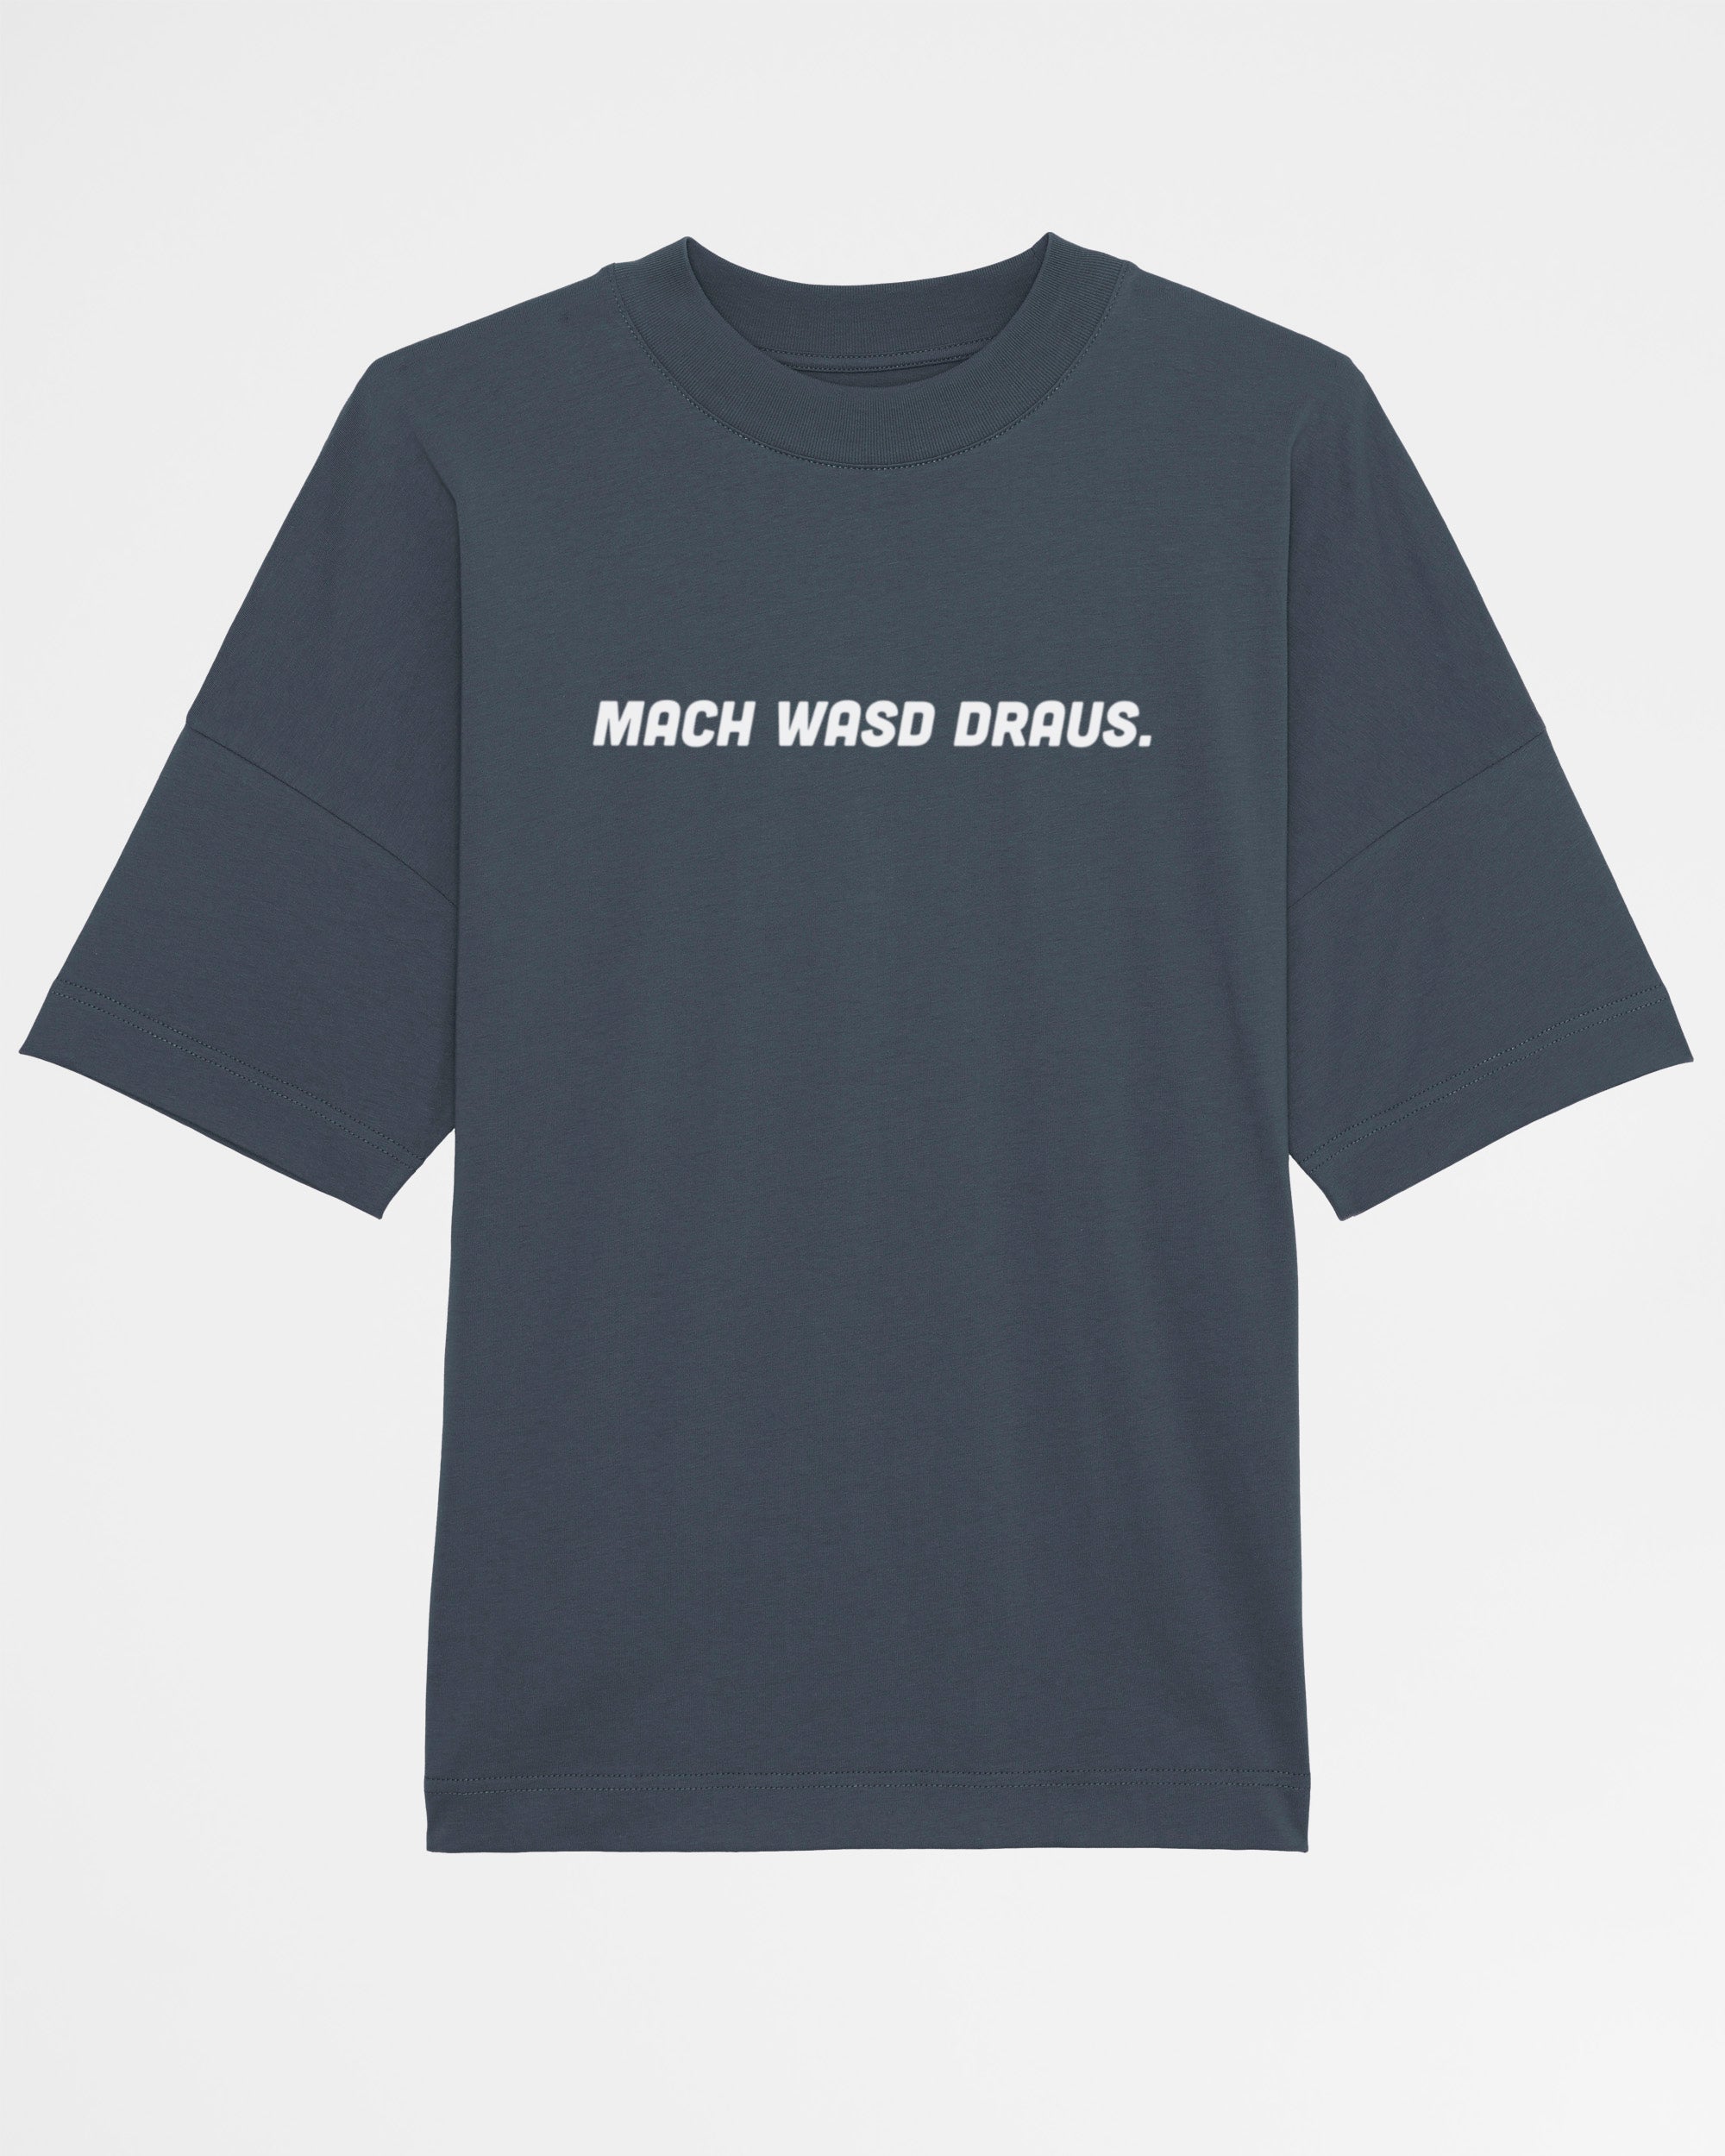 Mach WASD draus | 3-Style T-Shirt